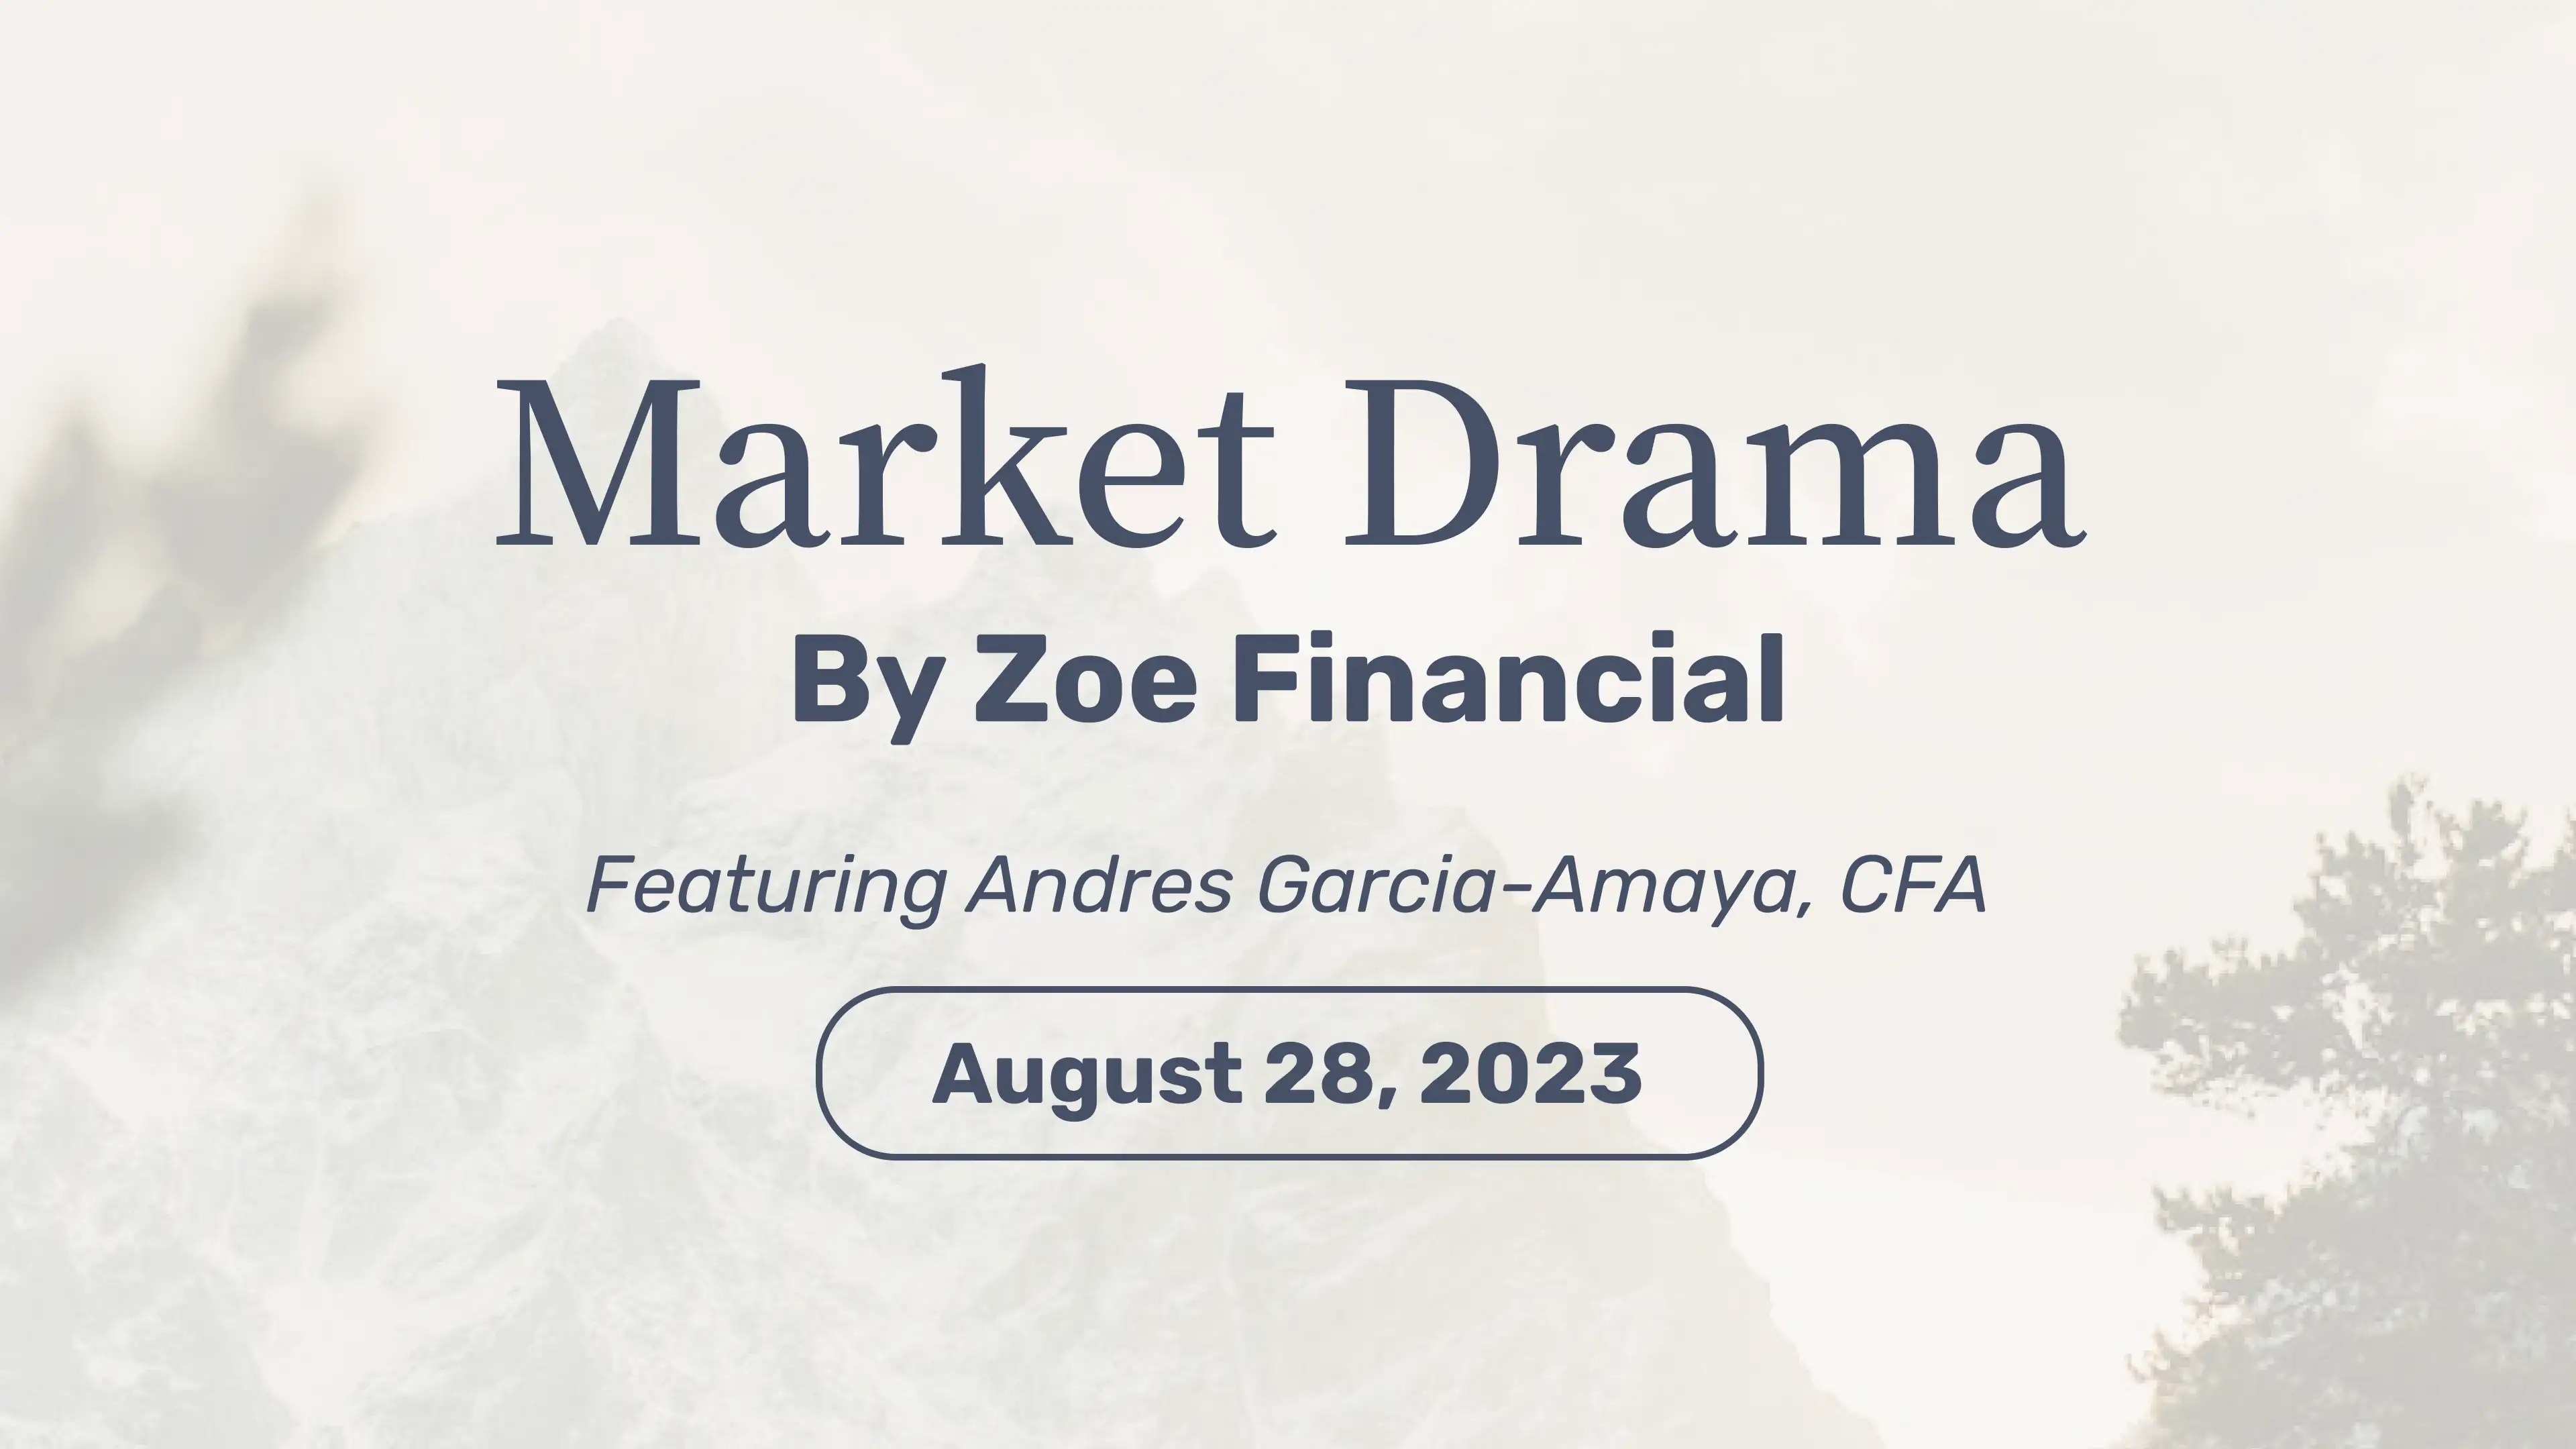 Market Drama - August 28